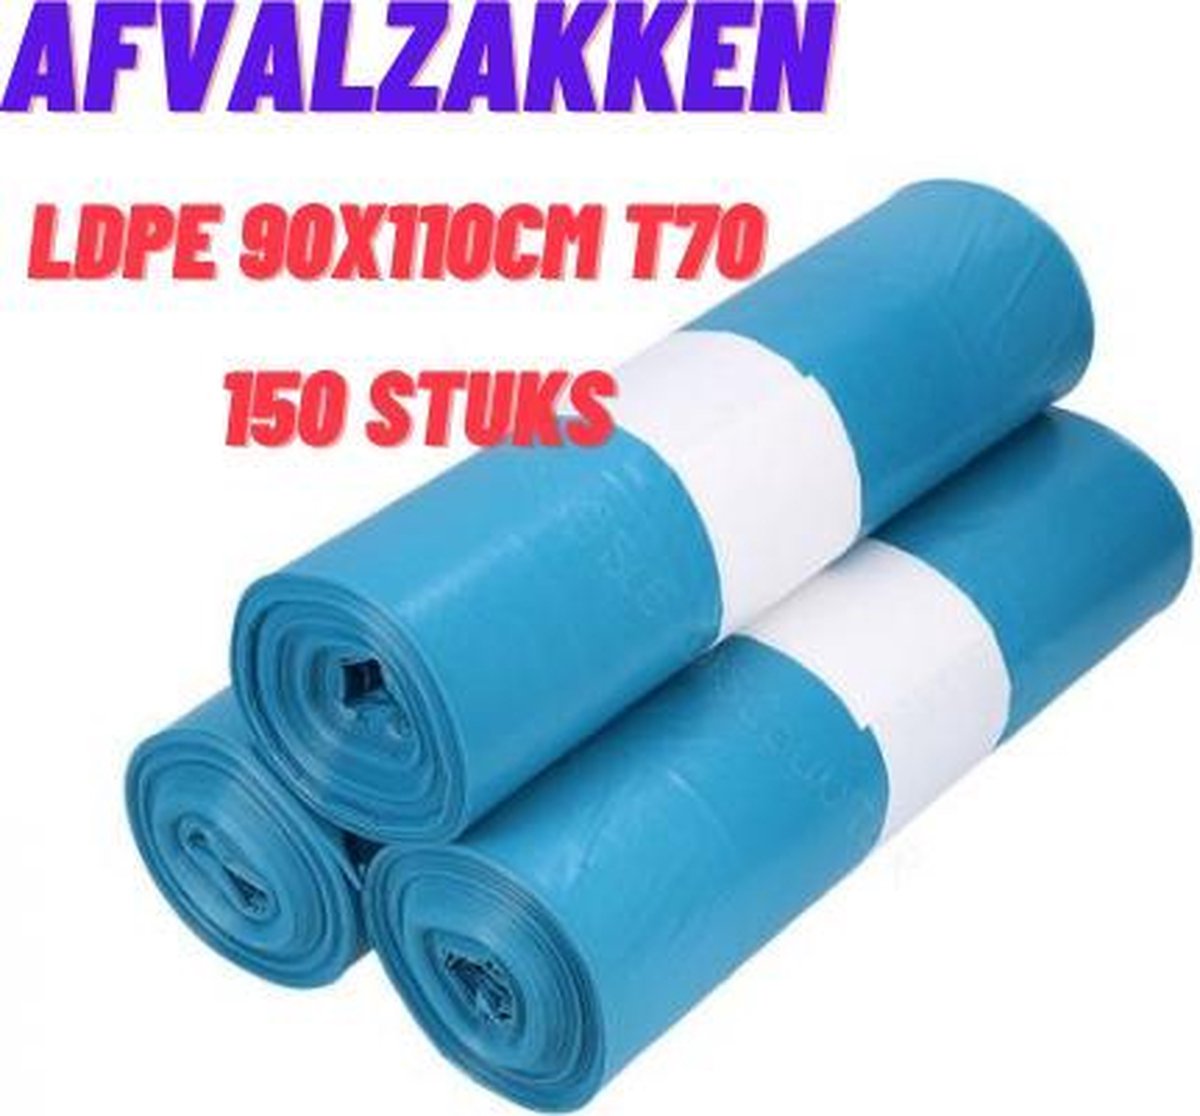 Vuilniszakken/Afvalzakken LDPE 90x110cm T70 blauw 140 liter Prullenbak zakken 150stuks